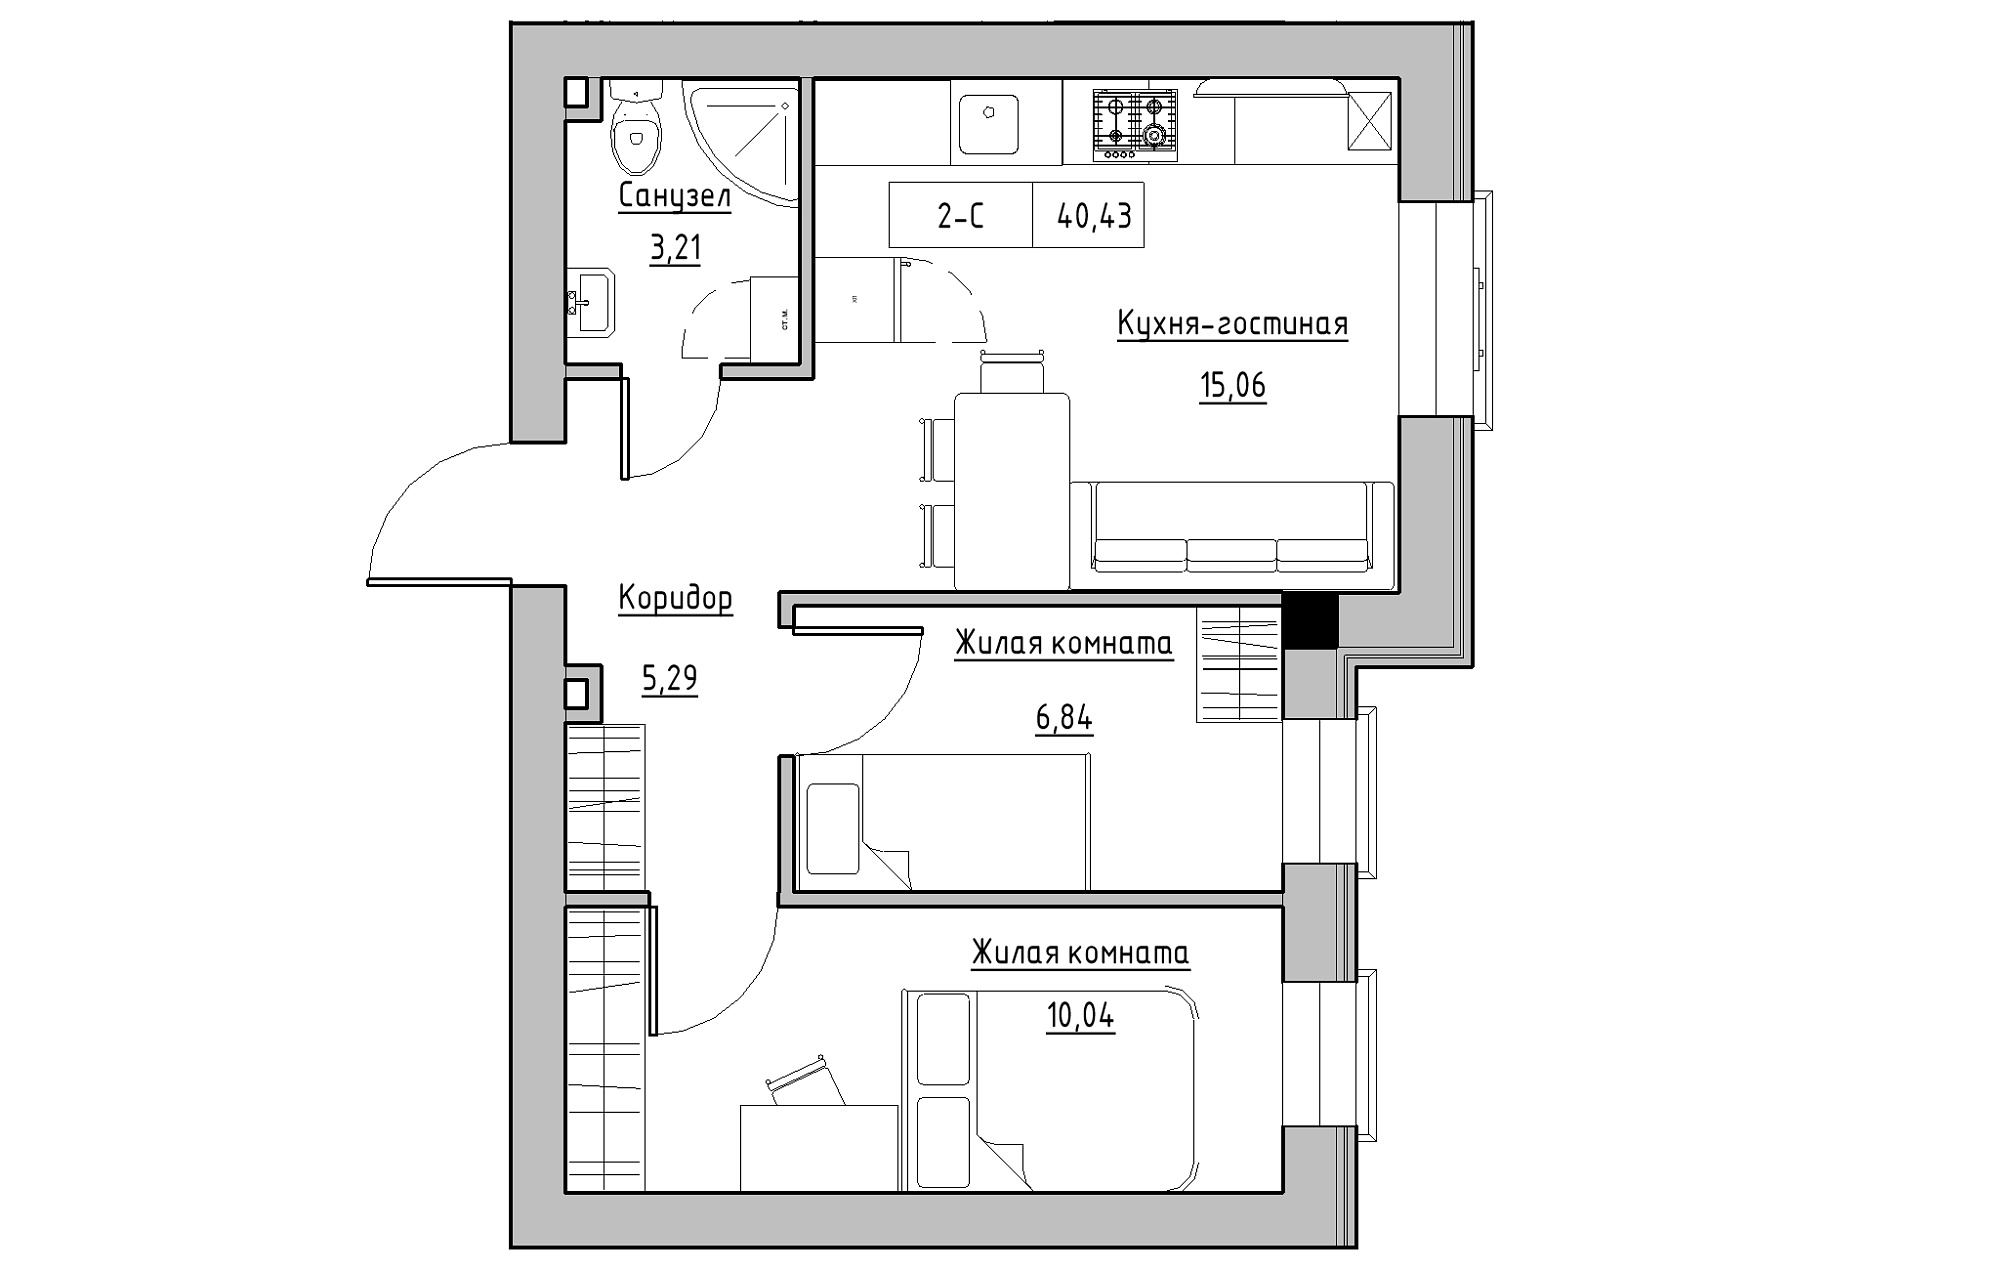 Планування 2-к квартира площею 40.43м2, KS-018-01/0010.